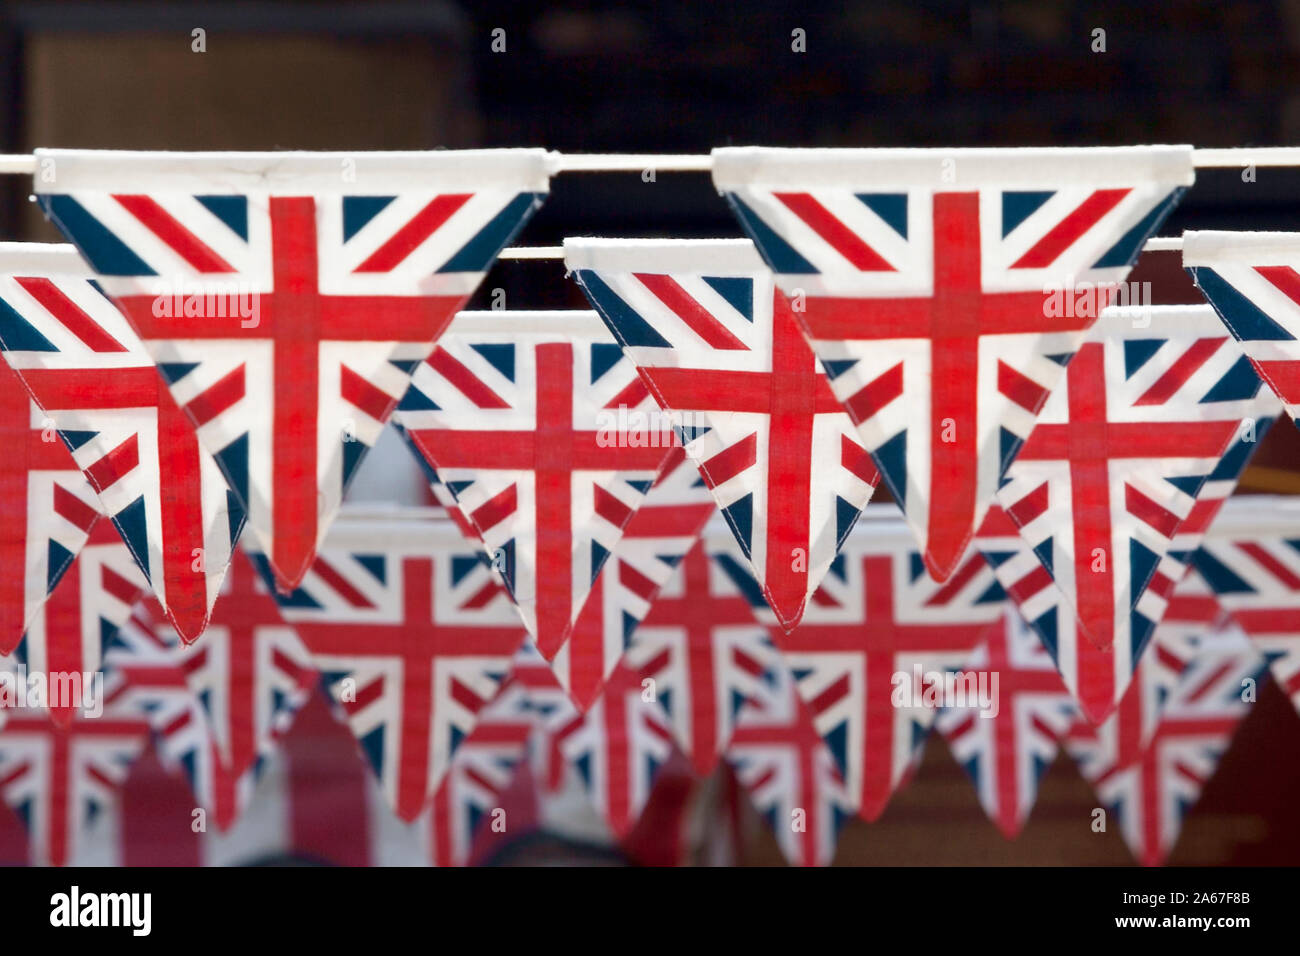 Ammer flaggen Jubiläums garten flaggen der Königin Union Jack Flagge